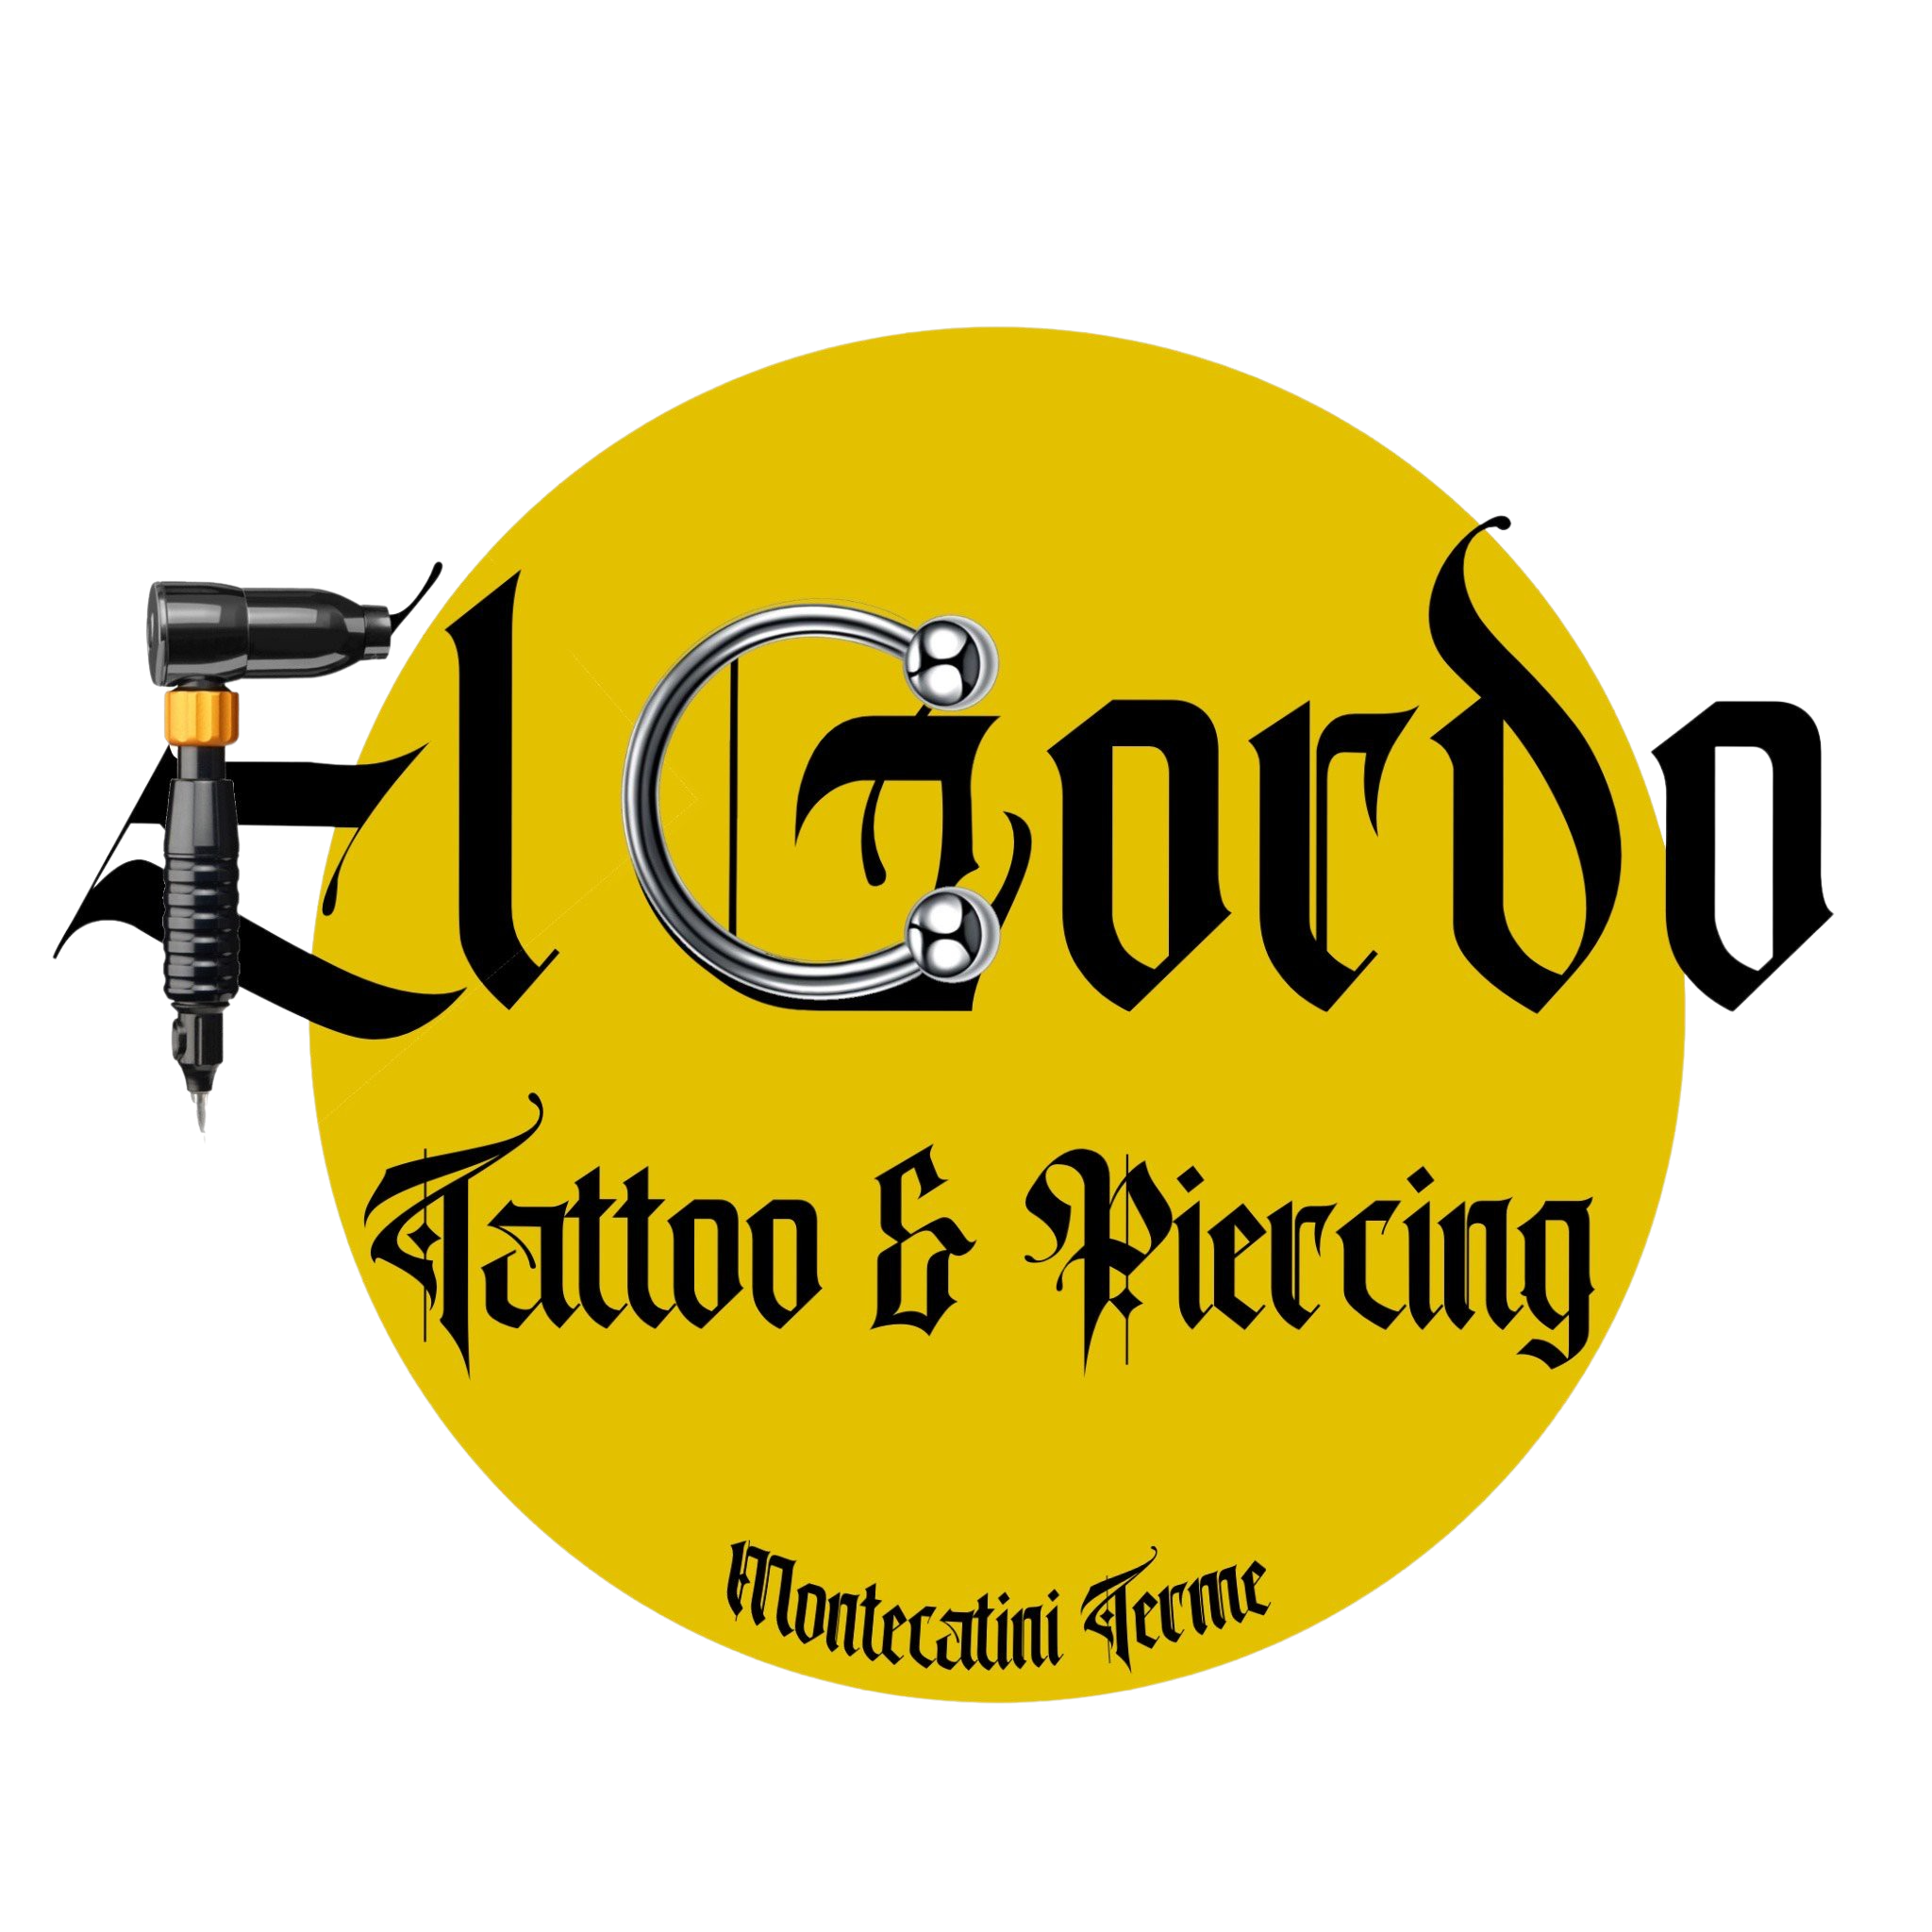 El Gordo Tattoo & Piercing